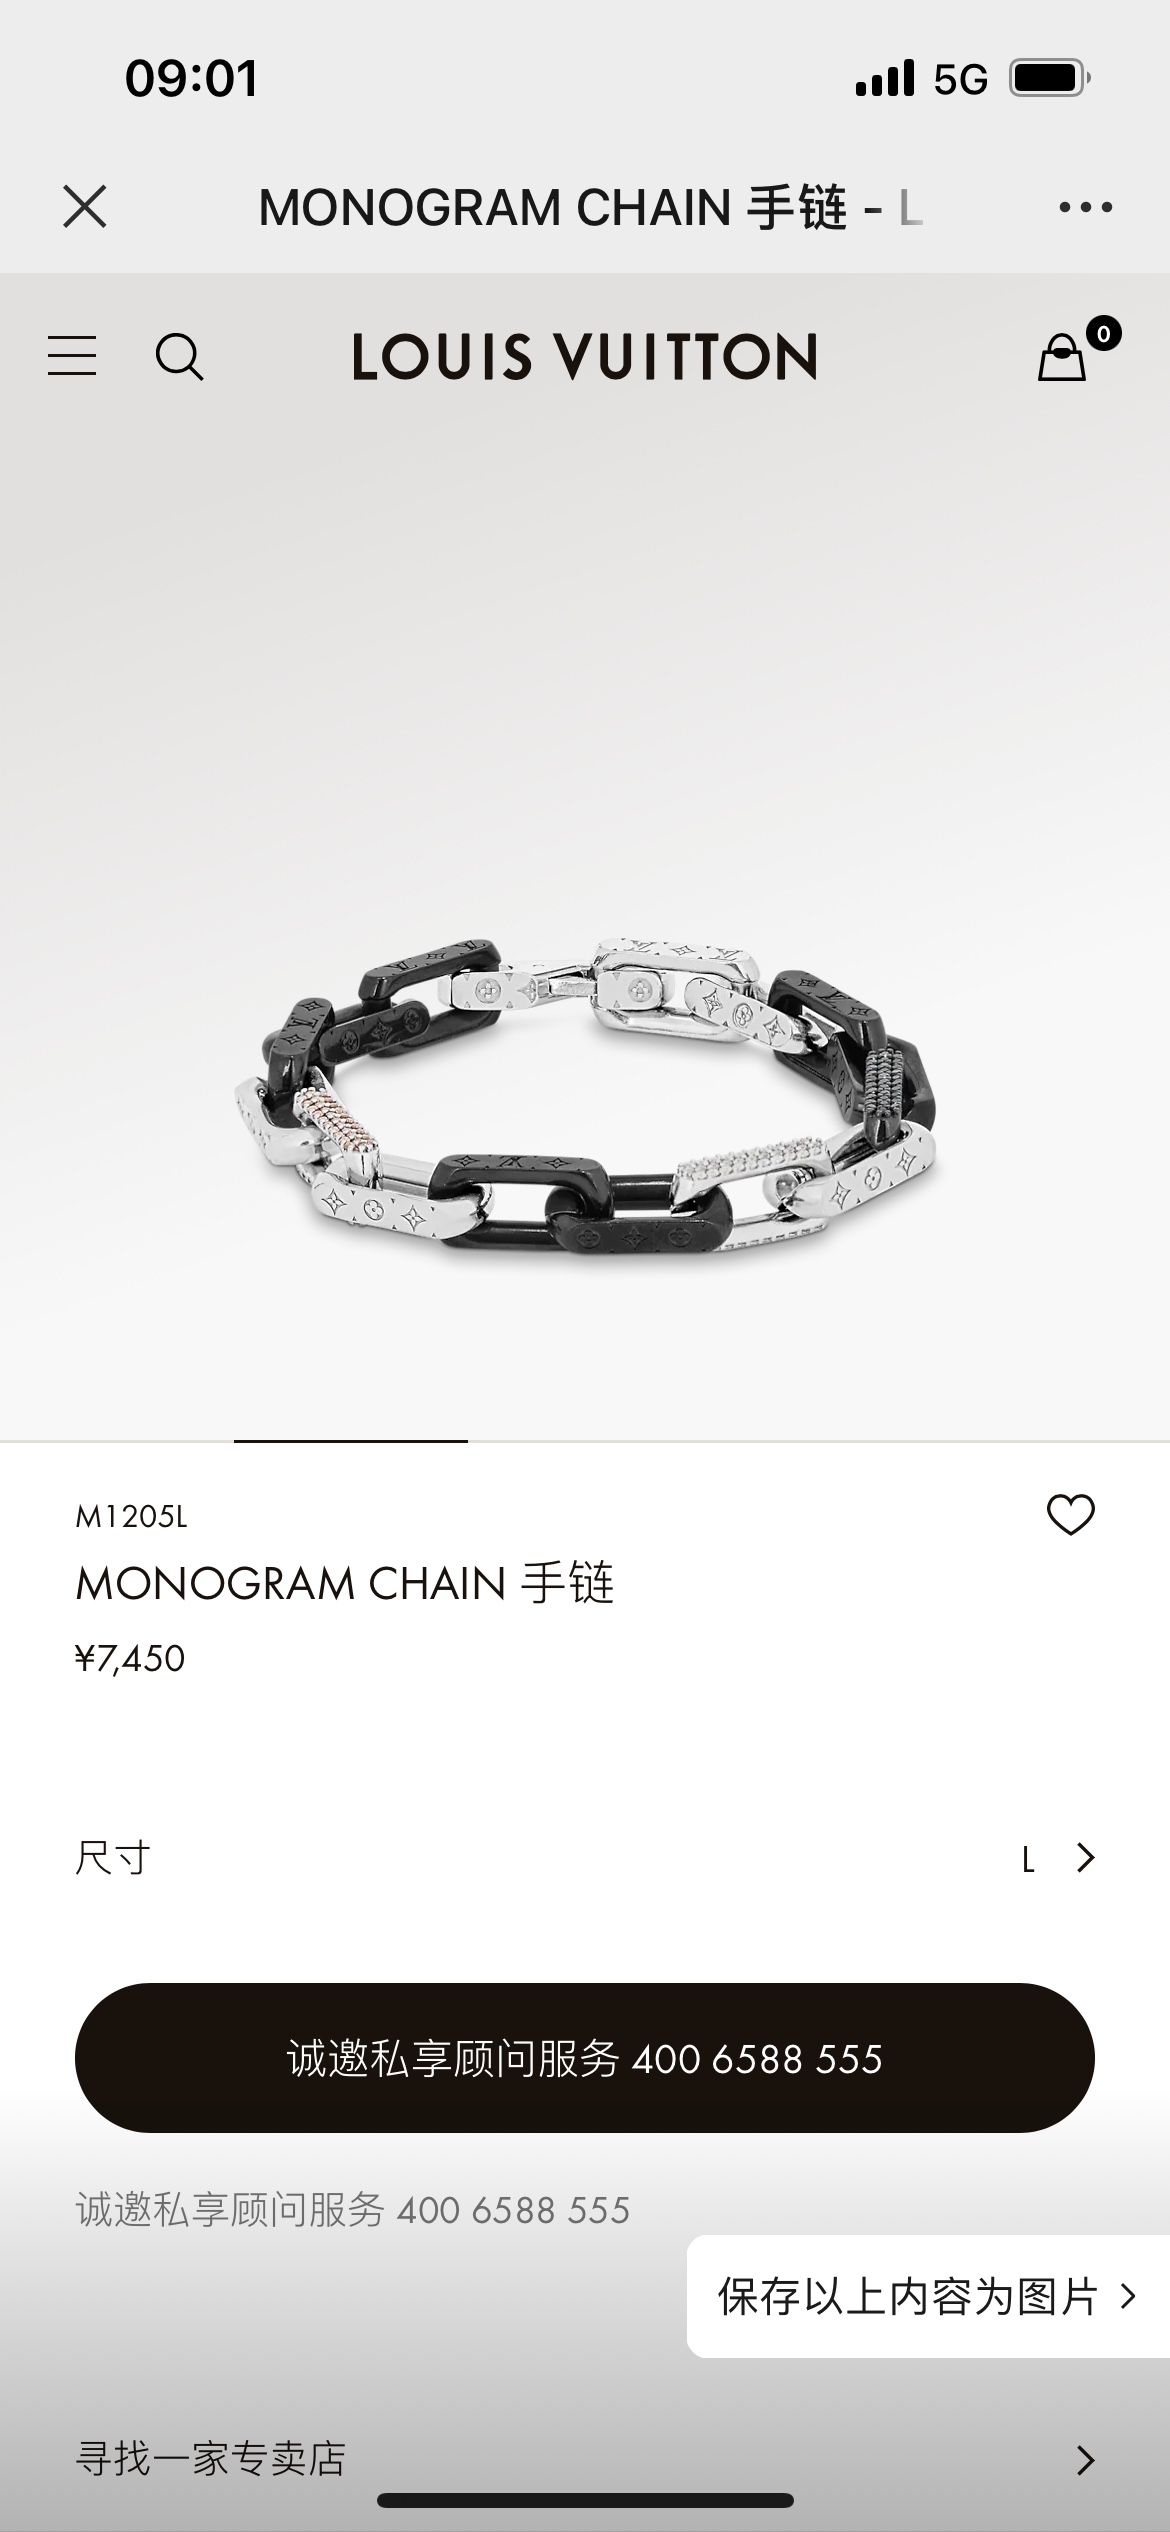 💰280
LV路易威登 MONOGRAM CHAIN手链（M1255L）
Monogram Chain 手链为粗犷工业风格链环镂刻品牌经典图案，挥洒舒朗刚毅的美学风范。璀璨人造水晶辉映色彩和质感反差，可与 Monogram Chain 项链共筑瞩目格调。
尺寸：72cm
